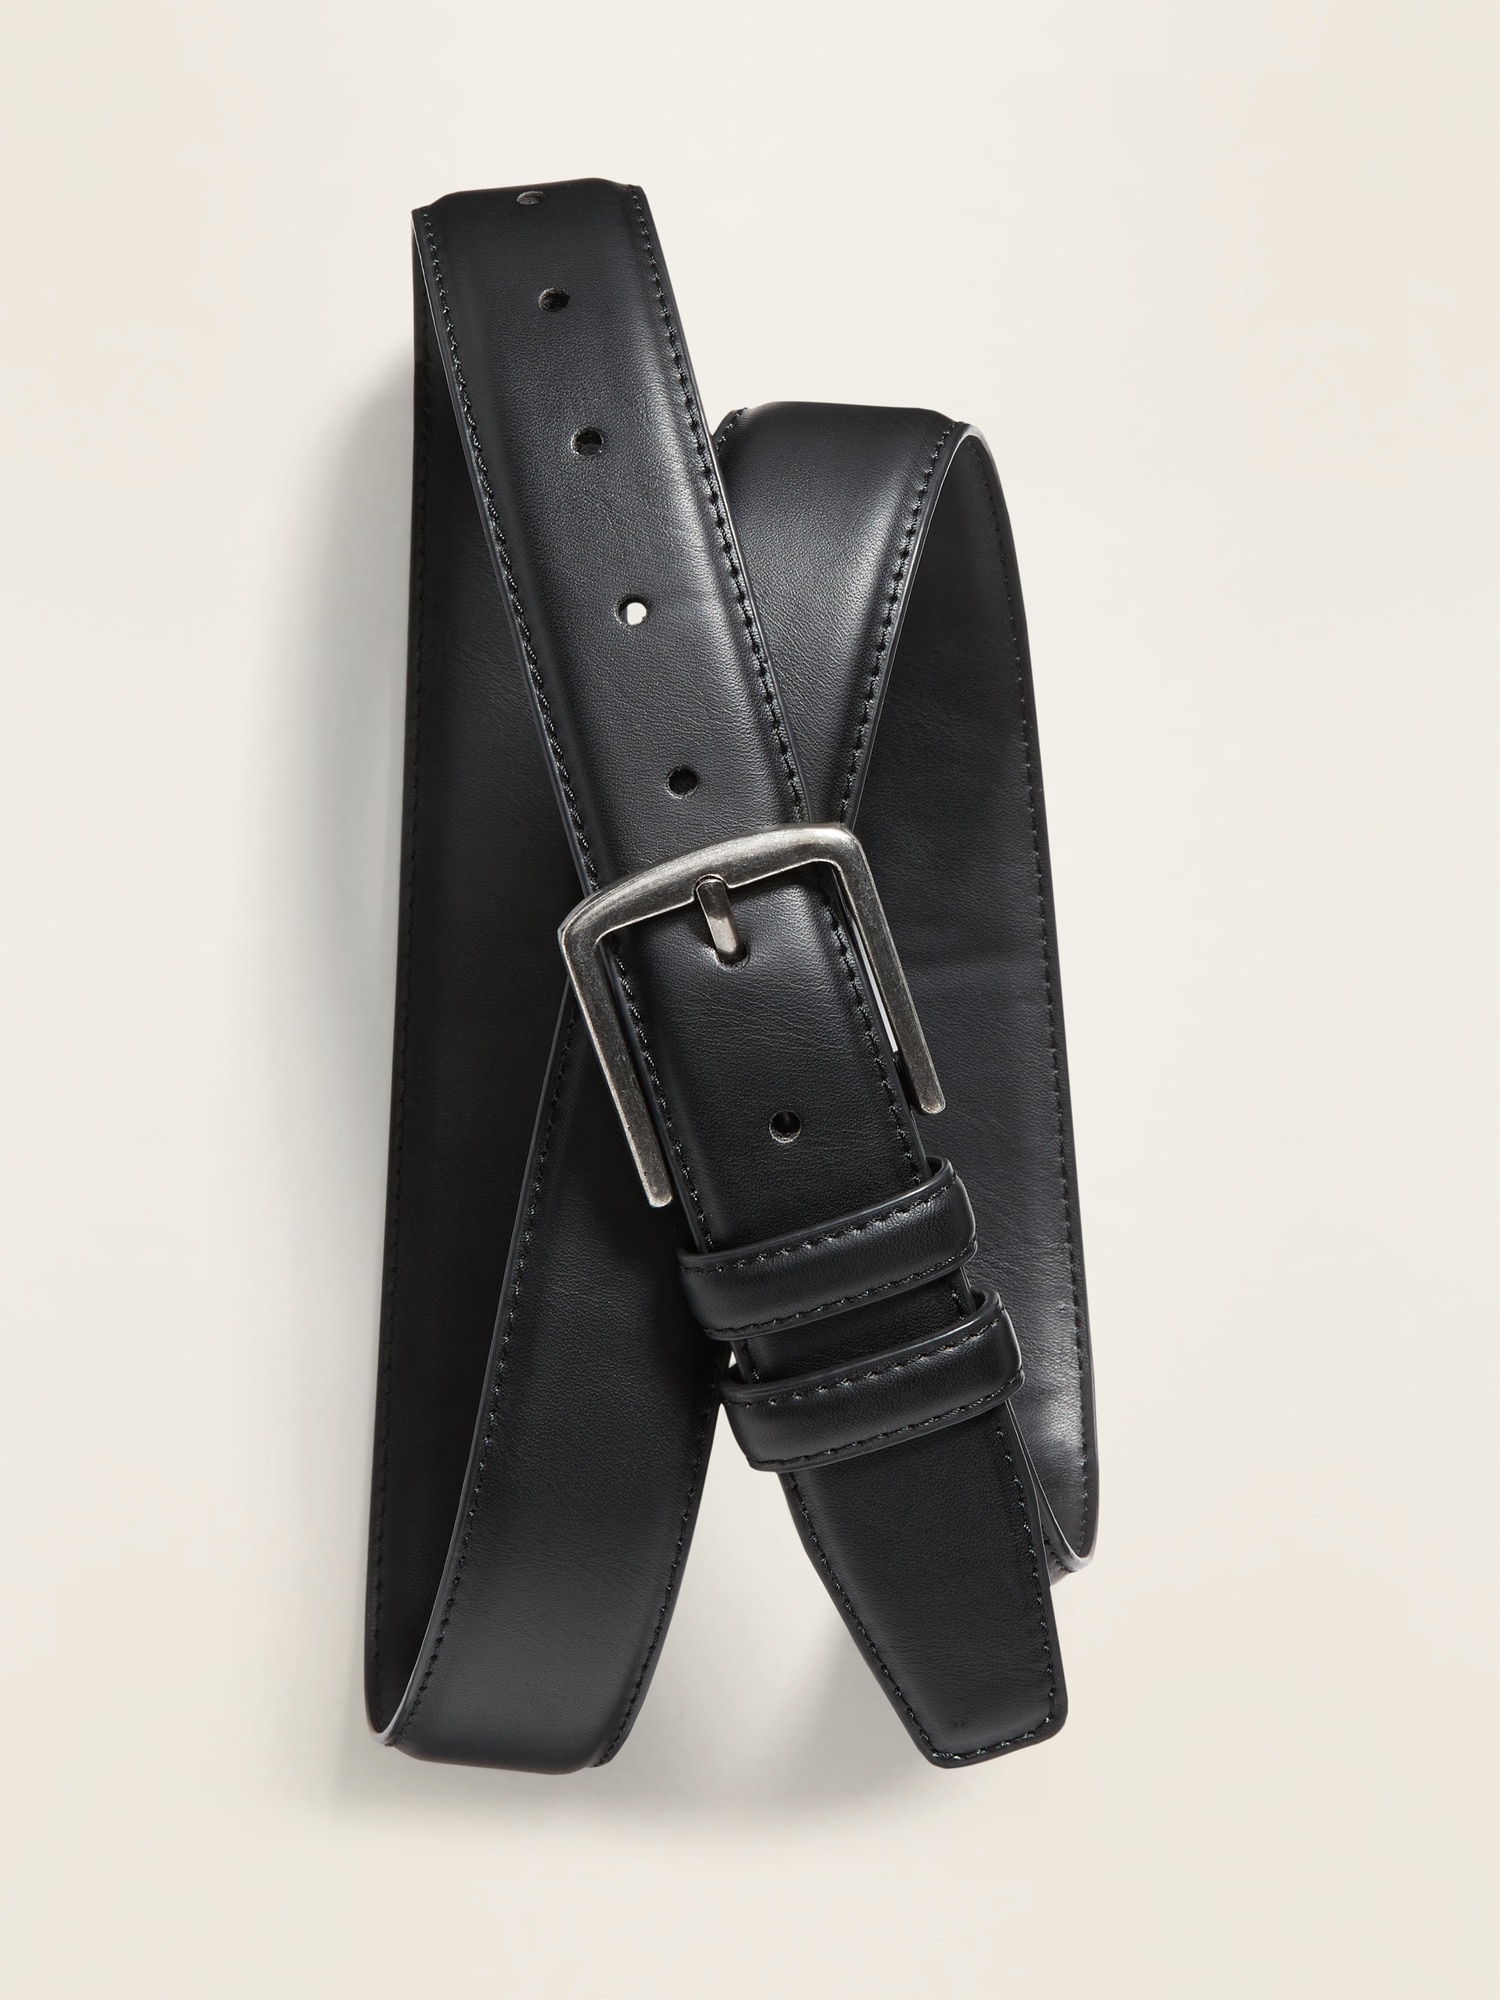 Old Navy Leather Belt for Men black. 1